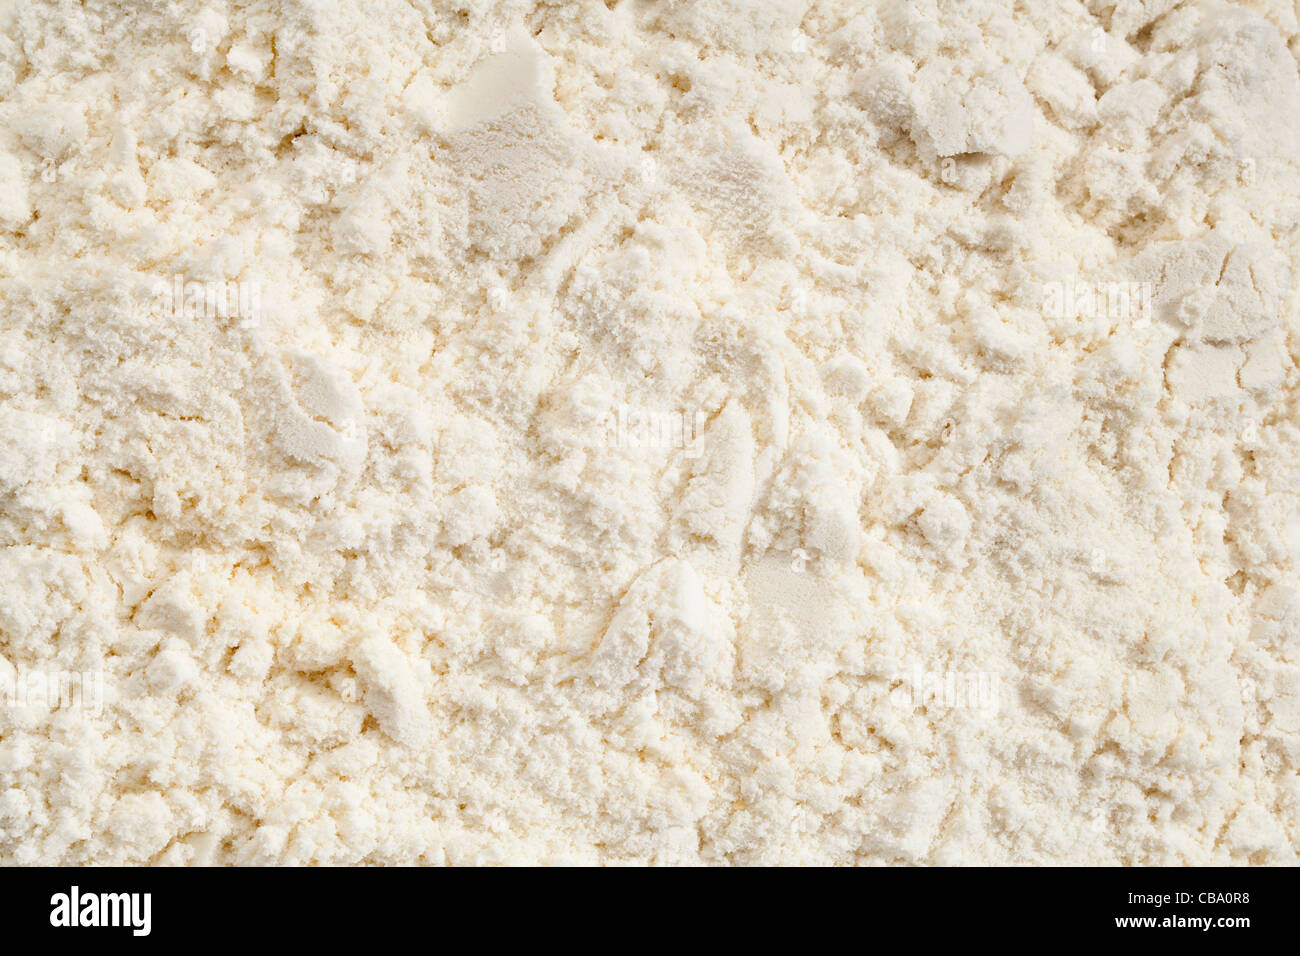 background of white whey protein isolate powder Stock Photo